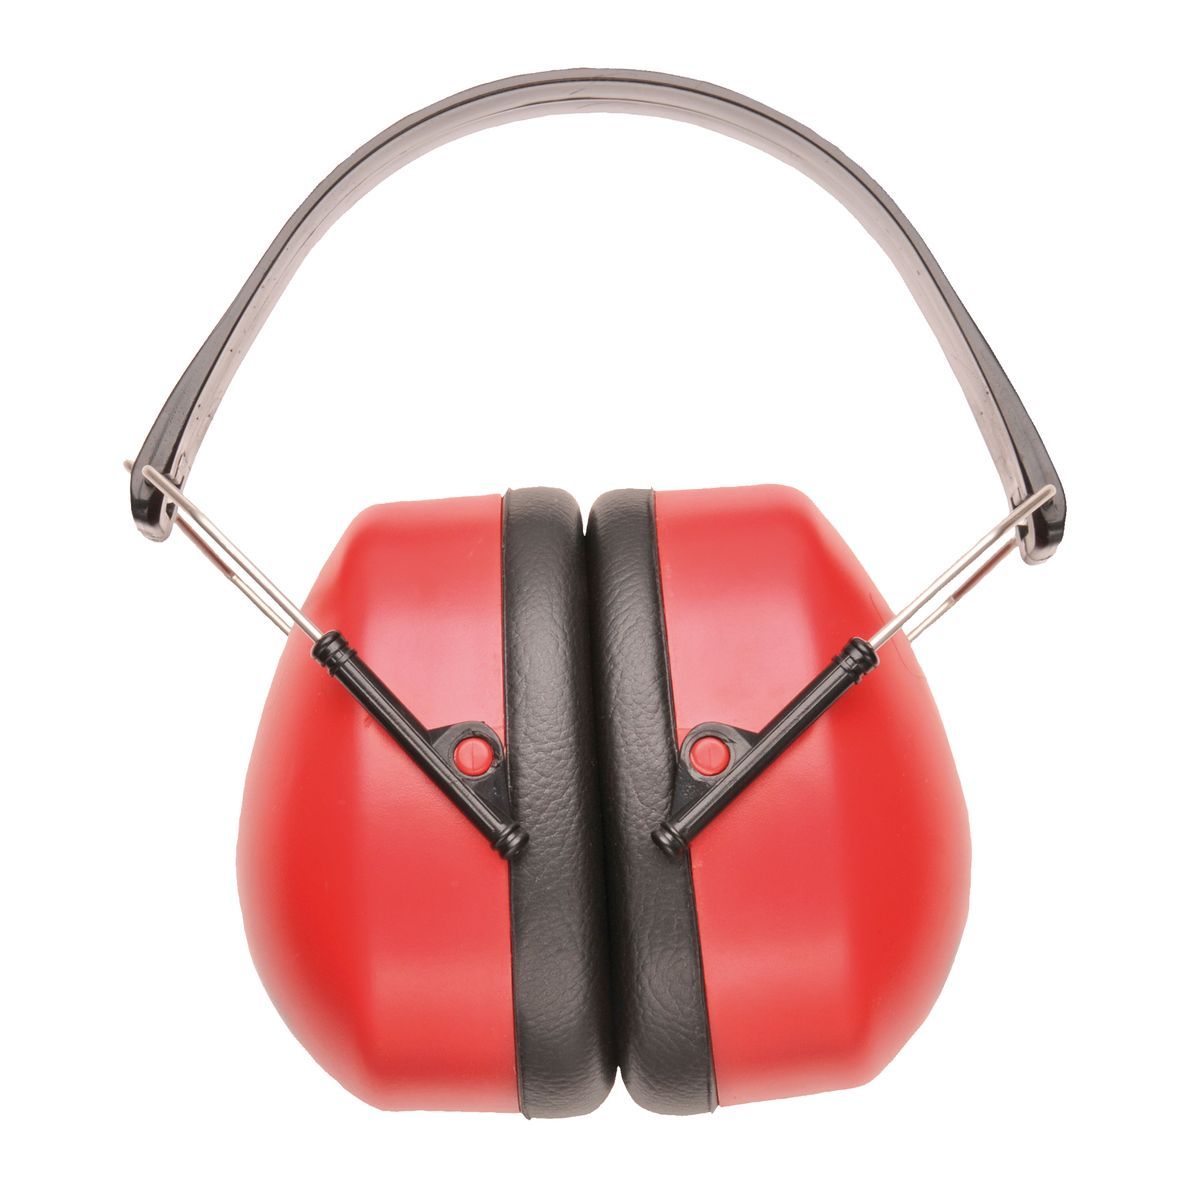 Style PW41 Super Ear Muffs EN352-1